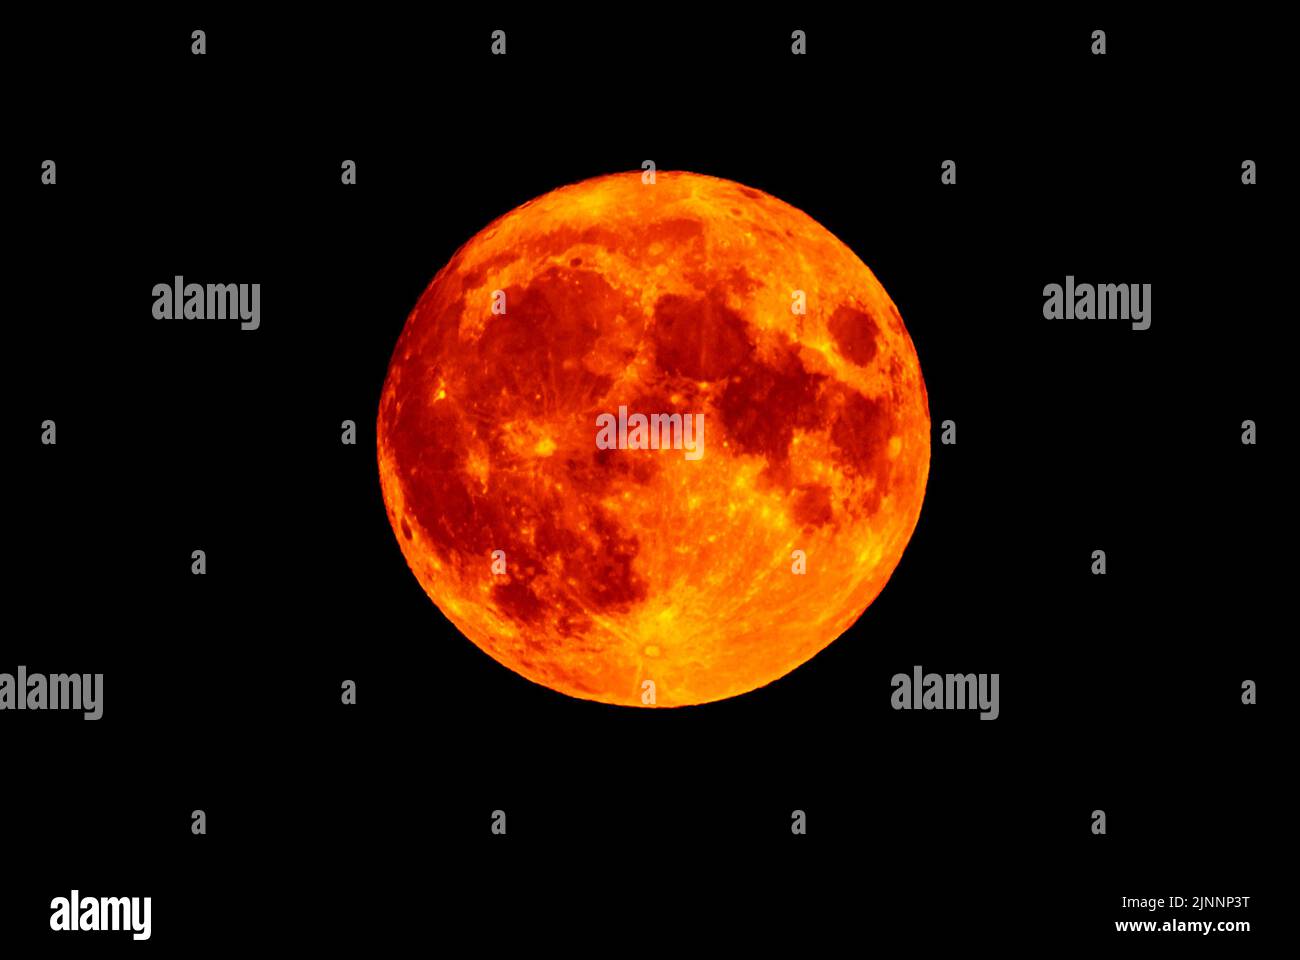 Pleine lune, une lune d'esturgeon et la super lune (Super Moon), rouge profond et orange éclatant juste au-dessus de l'horizon le 11th août 2022 du Royaume-Uni avec ciel noir. Banque D'Images